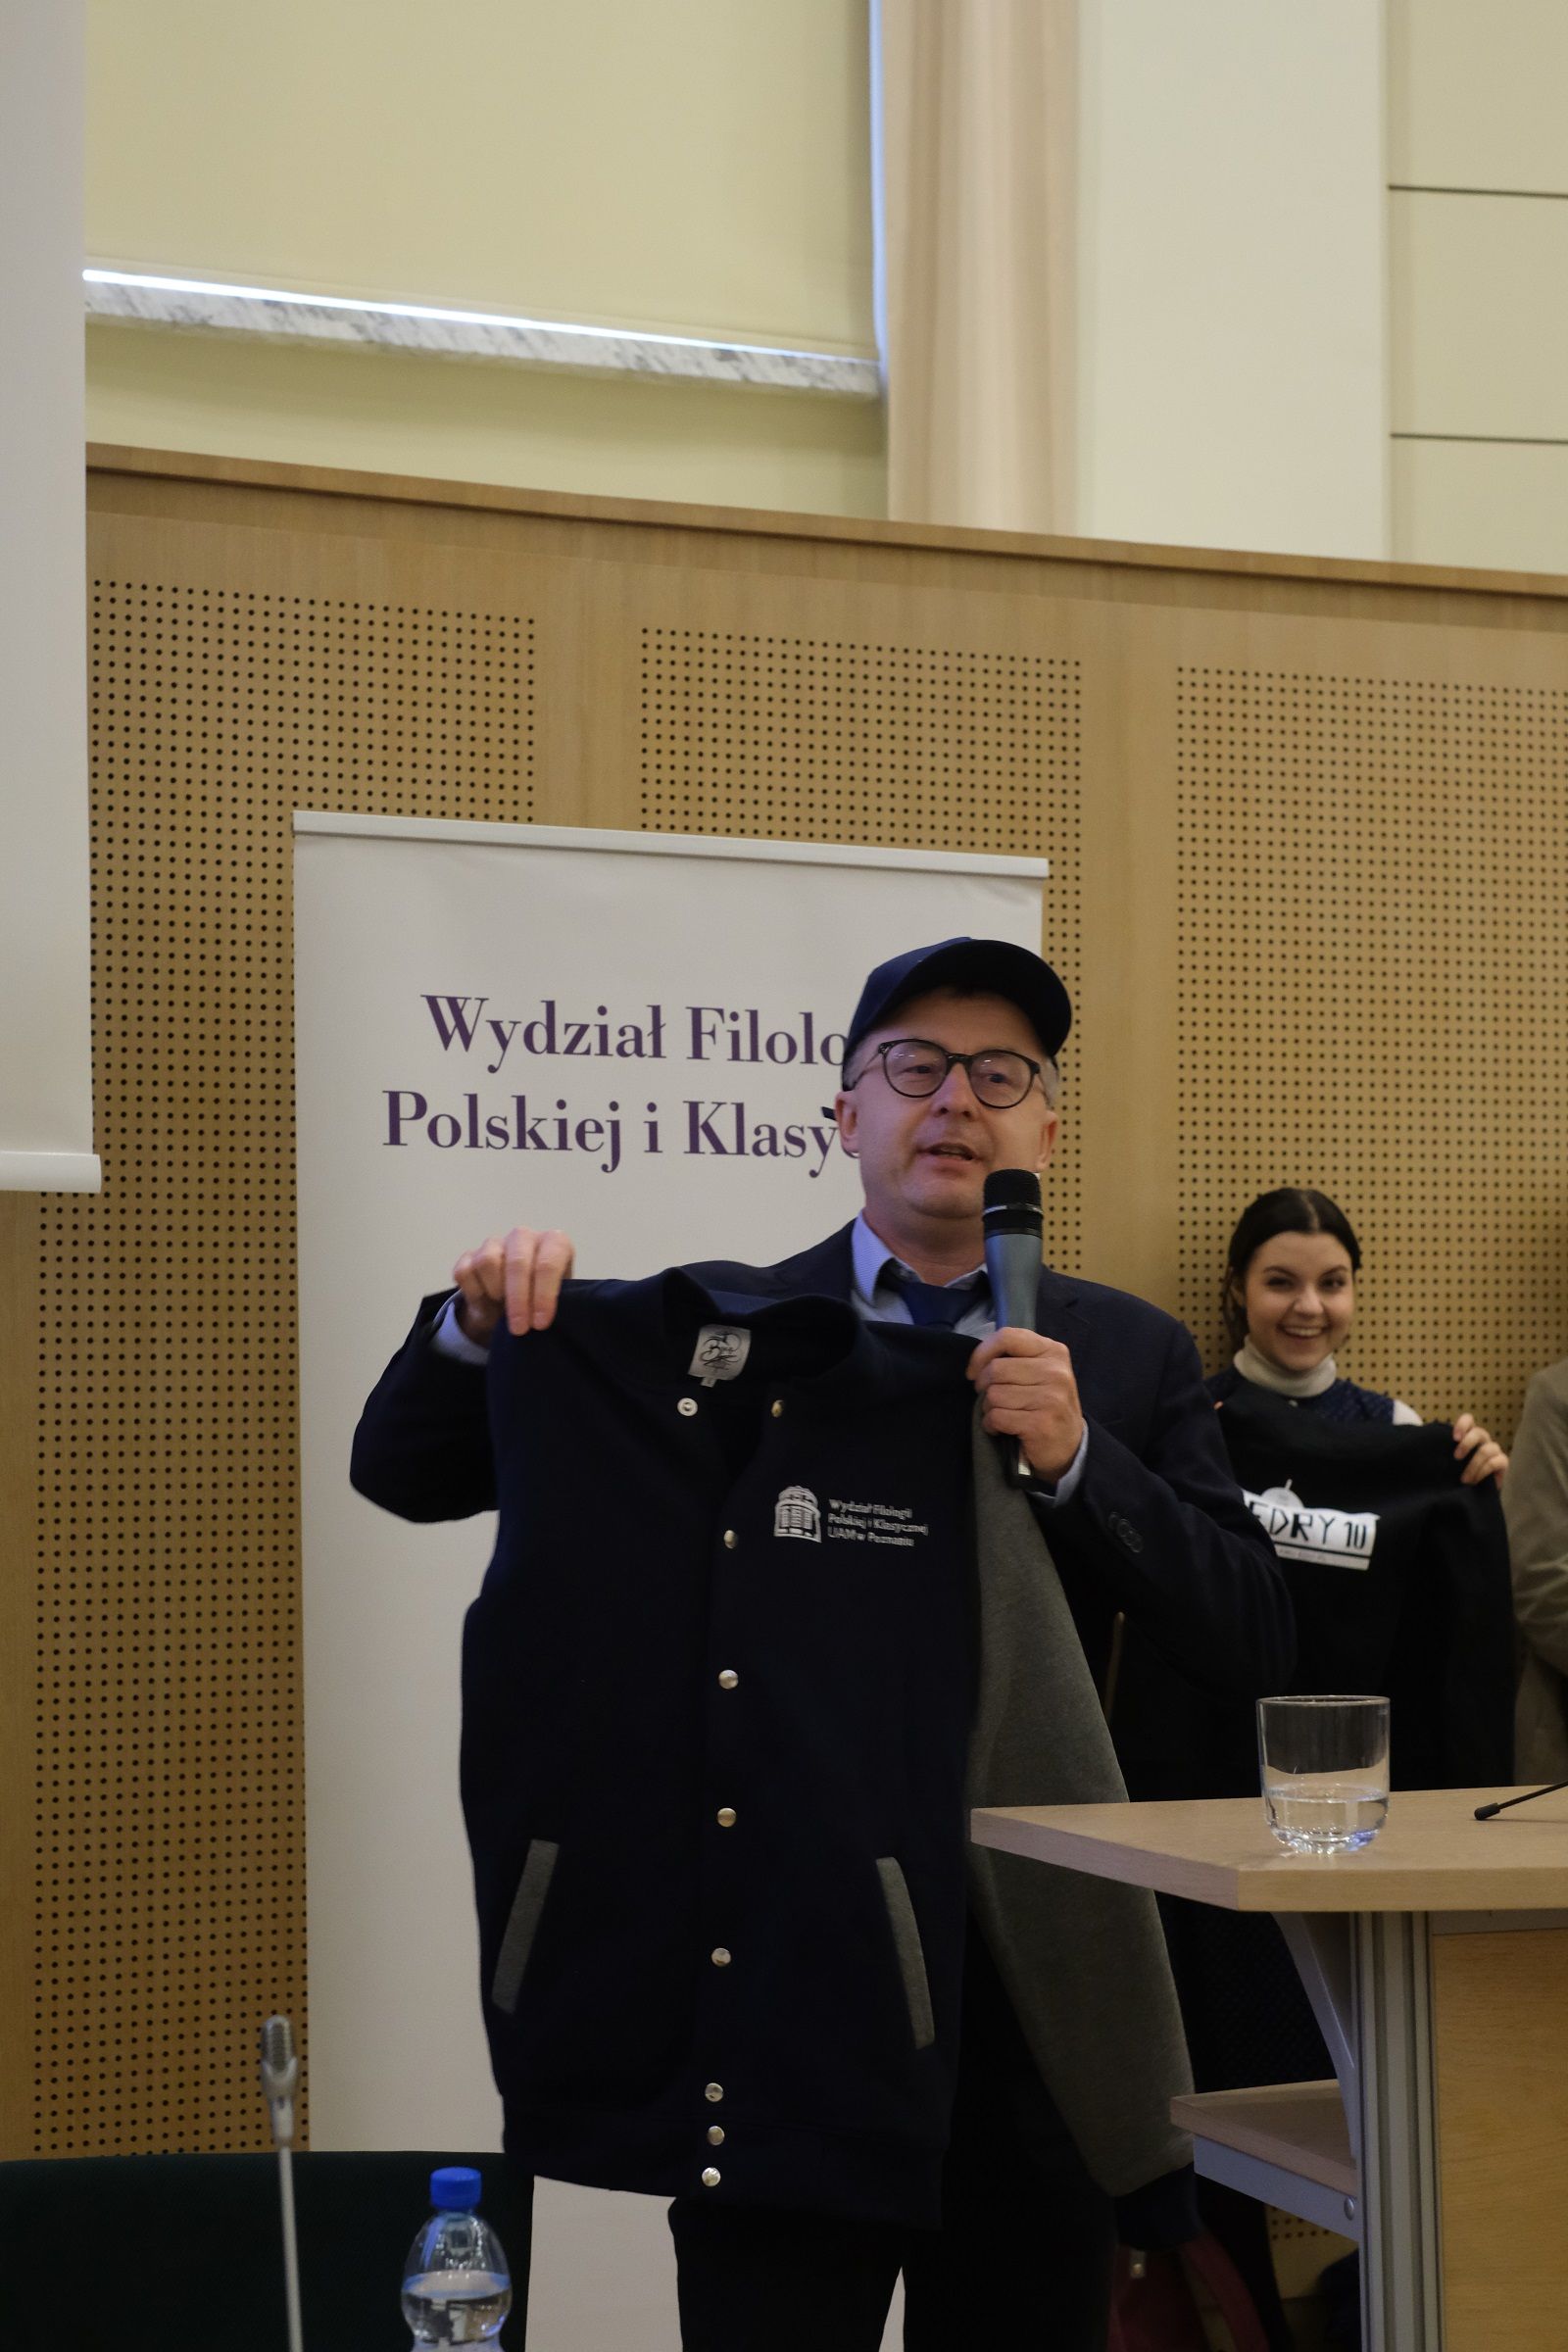 Dziekan WFPiK stoi przy mównicy i przemawia do mikrofonu, prezentuje bluzę wydziałową, na głowie ma czapkę z daszkiem, również z oznakowaniem wydziałowym.